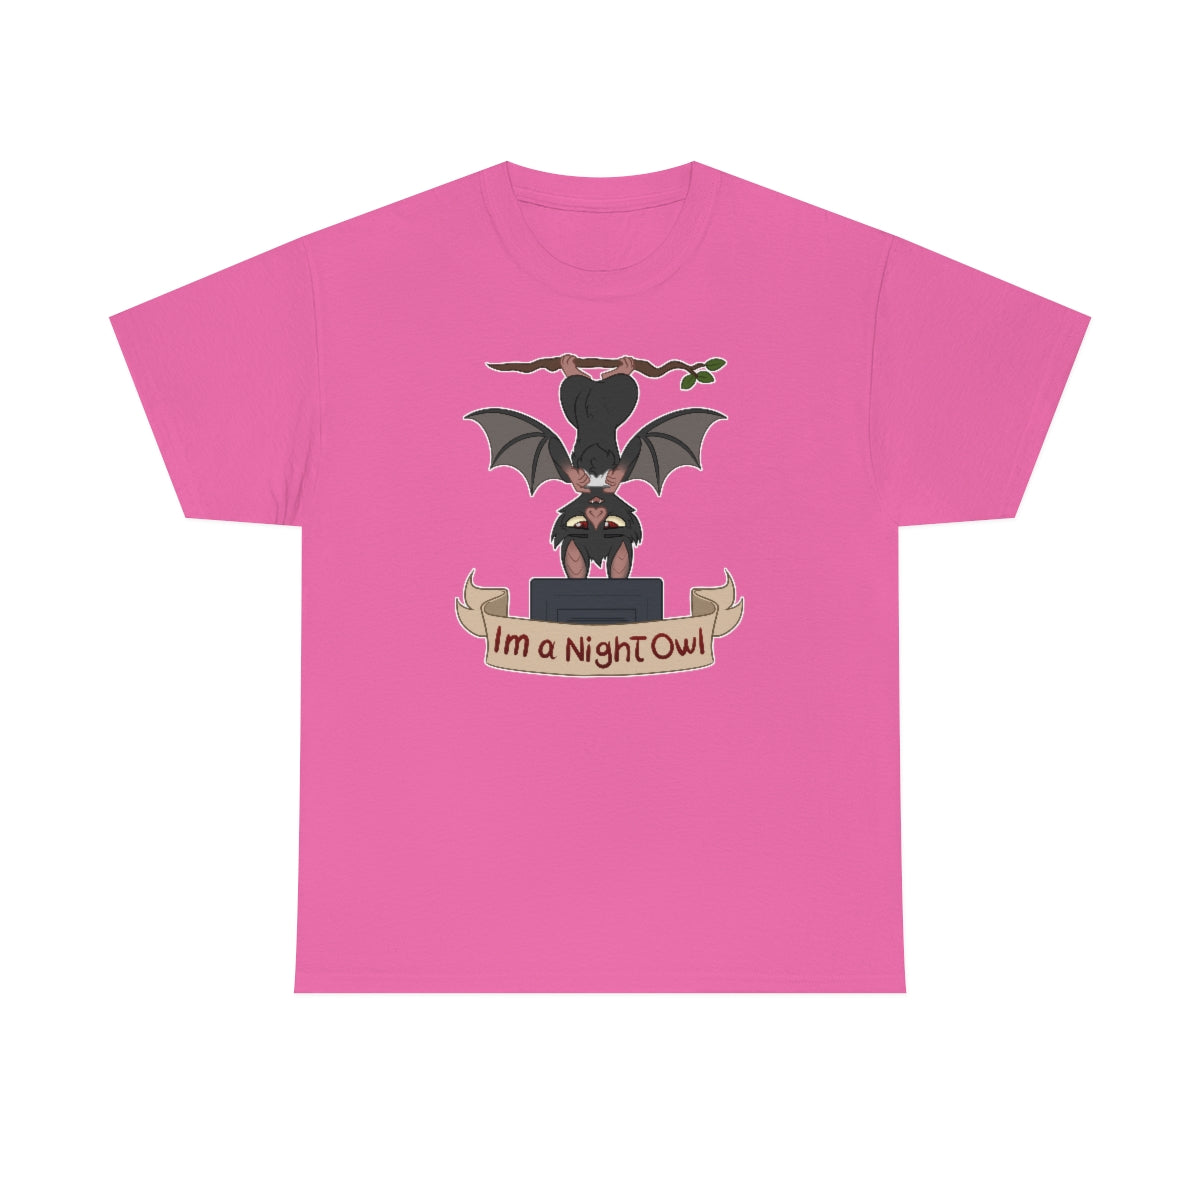 I am a Night Owl - T-Shirt T-Shirt Artworktee Pink S 